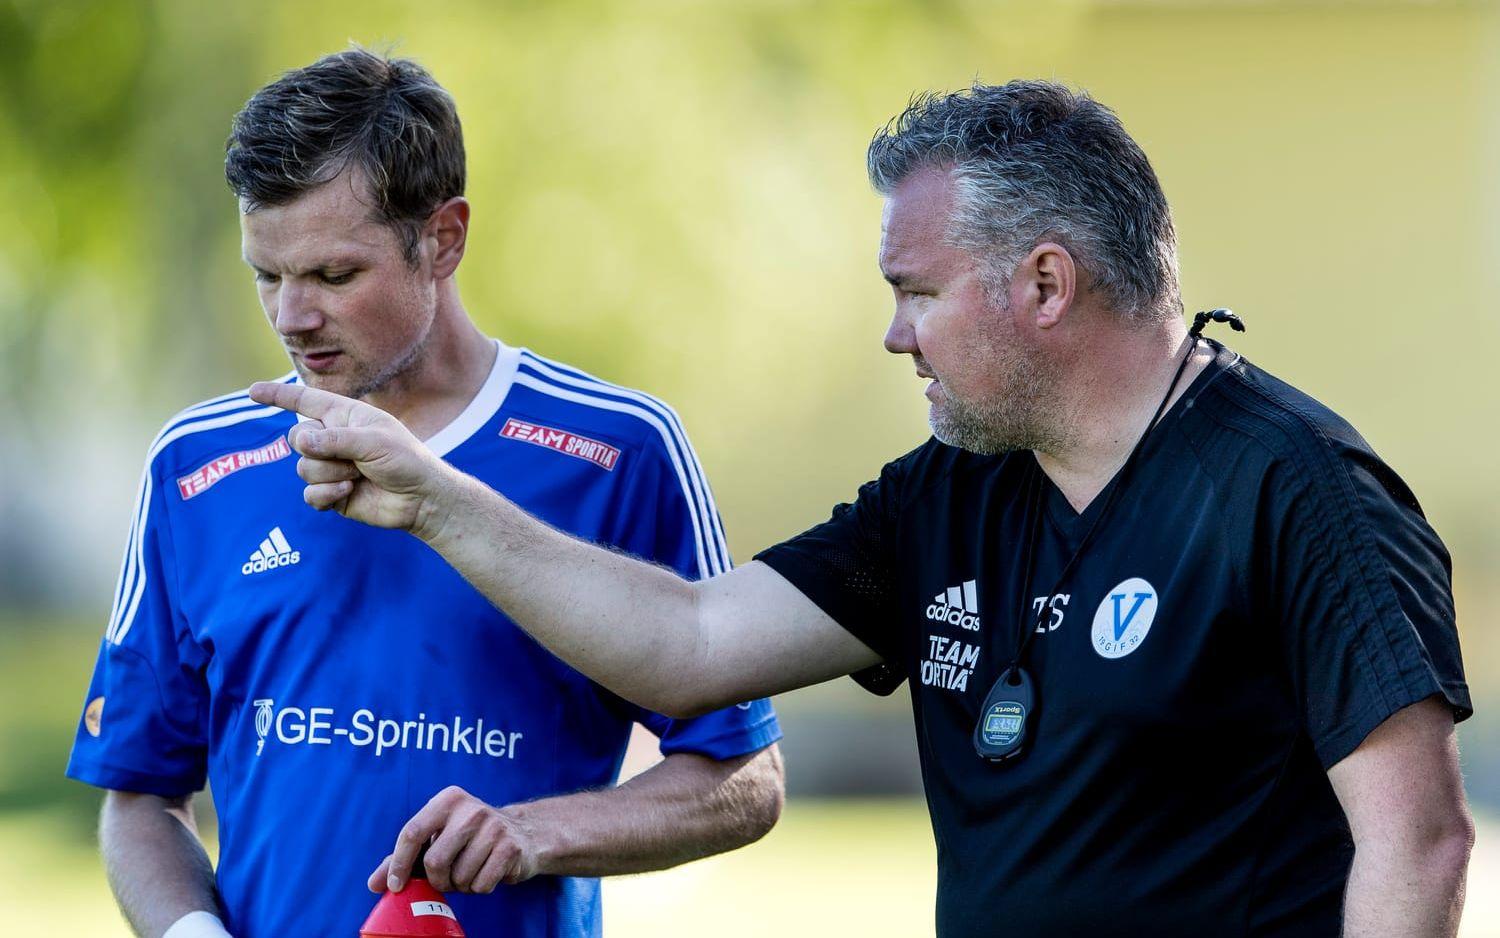 En tränares dröm. Hasse Månsson är för bra för division 5, men Thorbjörn Svensson är förstås tacksam.